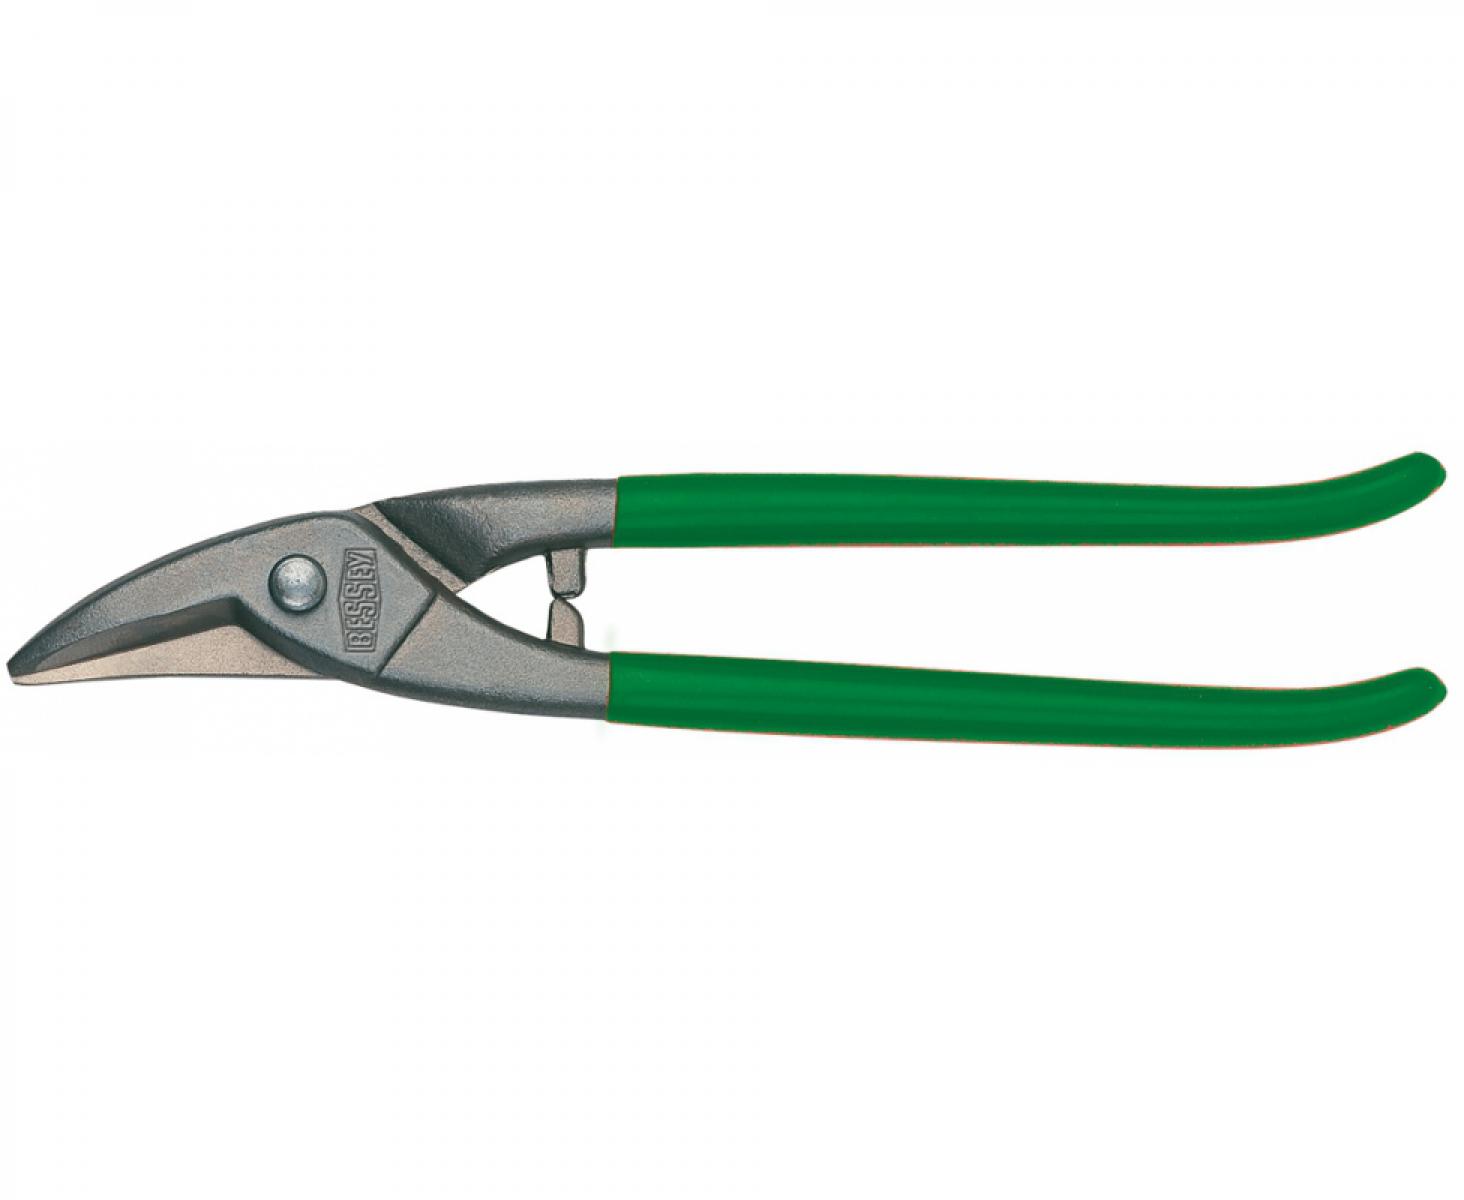 Ножницы для прорезания отверстий в листовом металле Erdi ER-D107-275-SB праворежущие